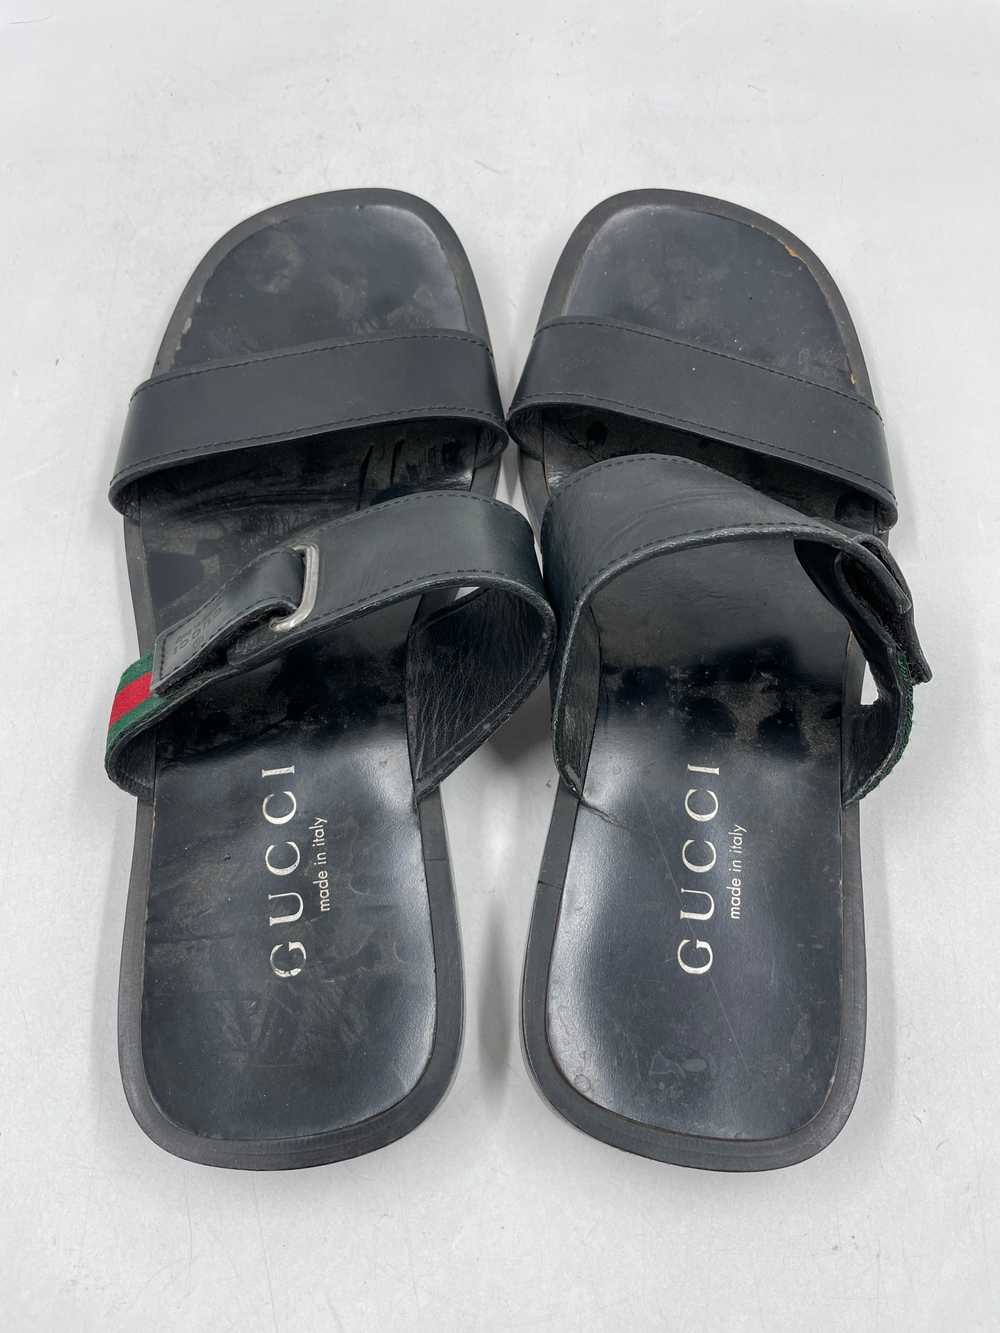 Authentic Gucci Black Leather Sandals M 10.5D - image 6